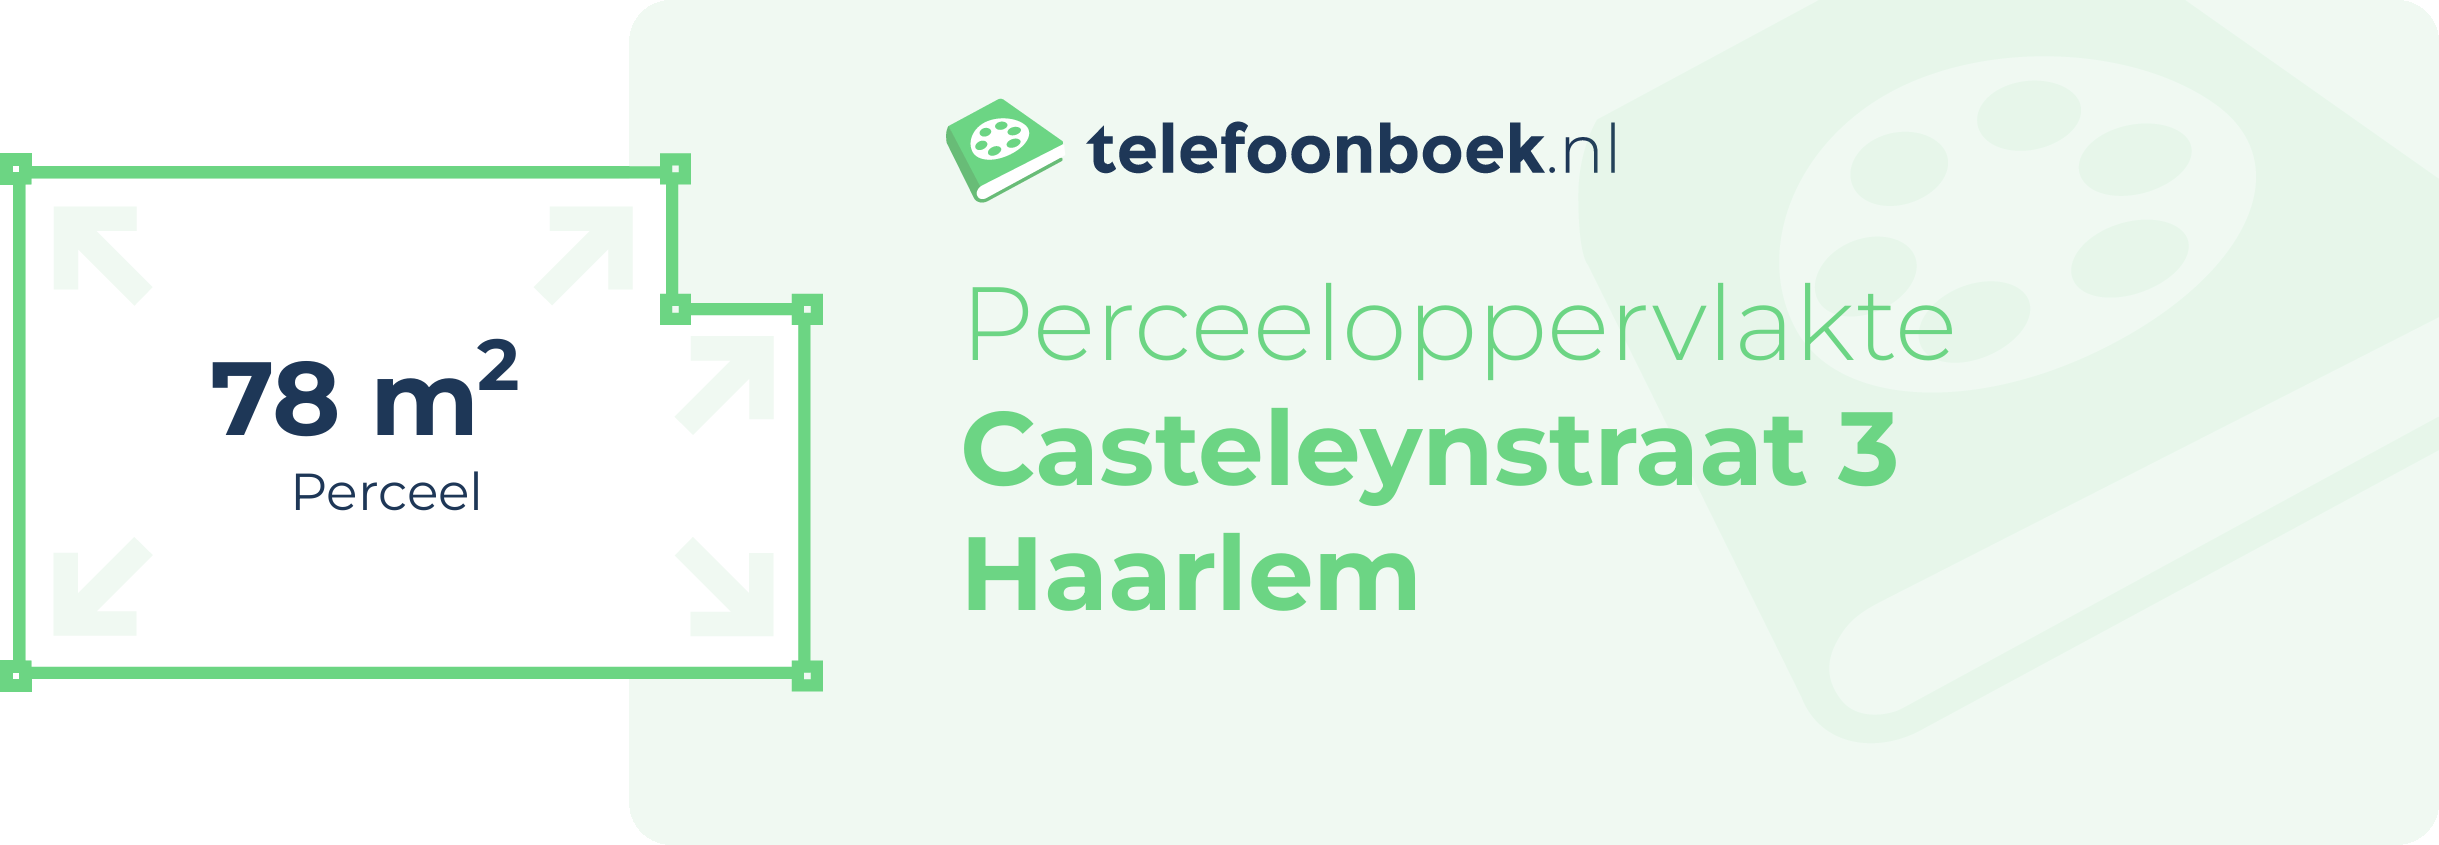 Perceeloppervlakte Casteleynstraat 3 Haarlem